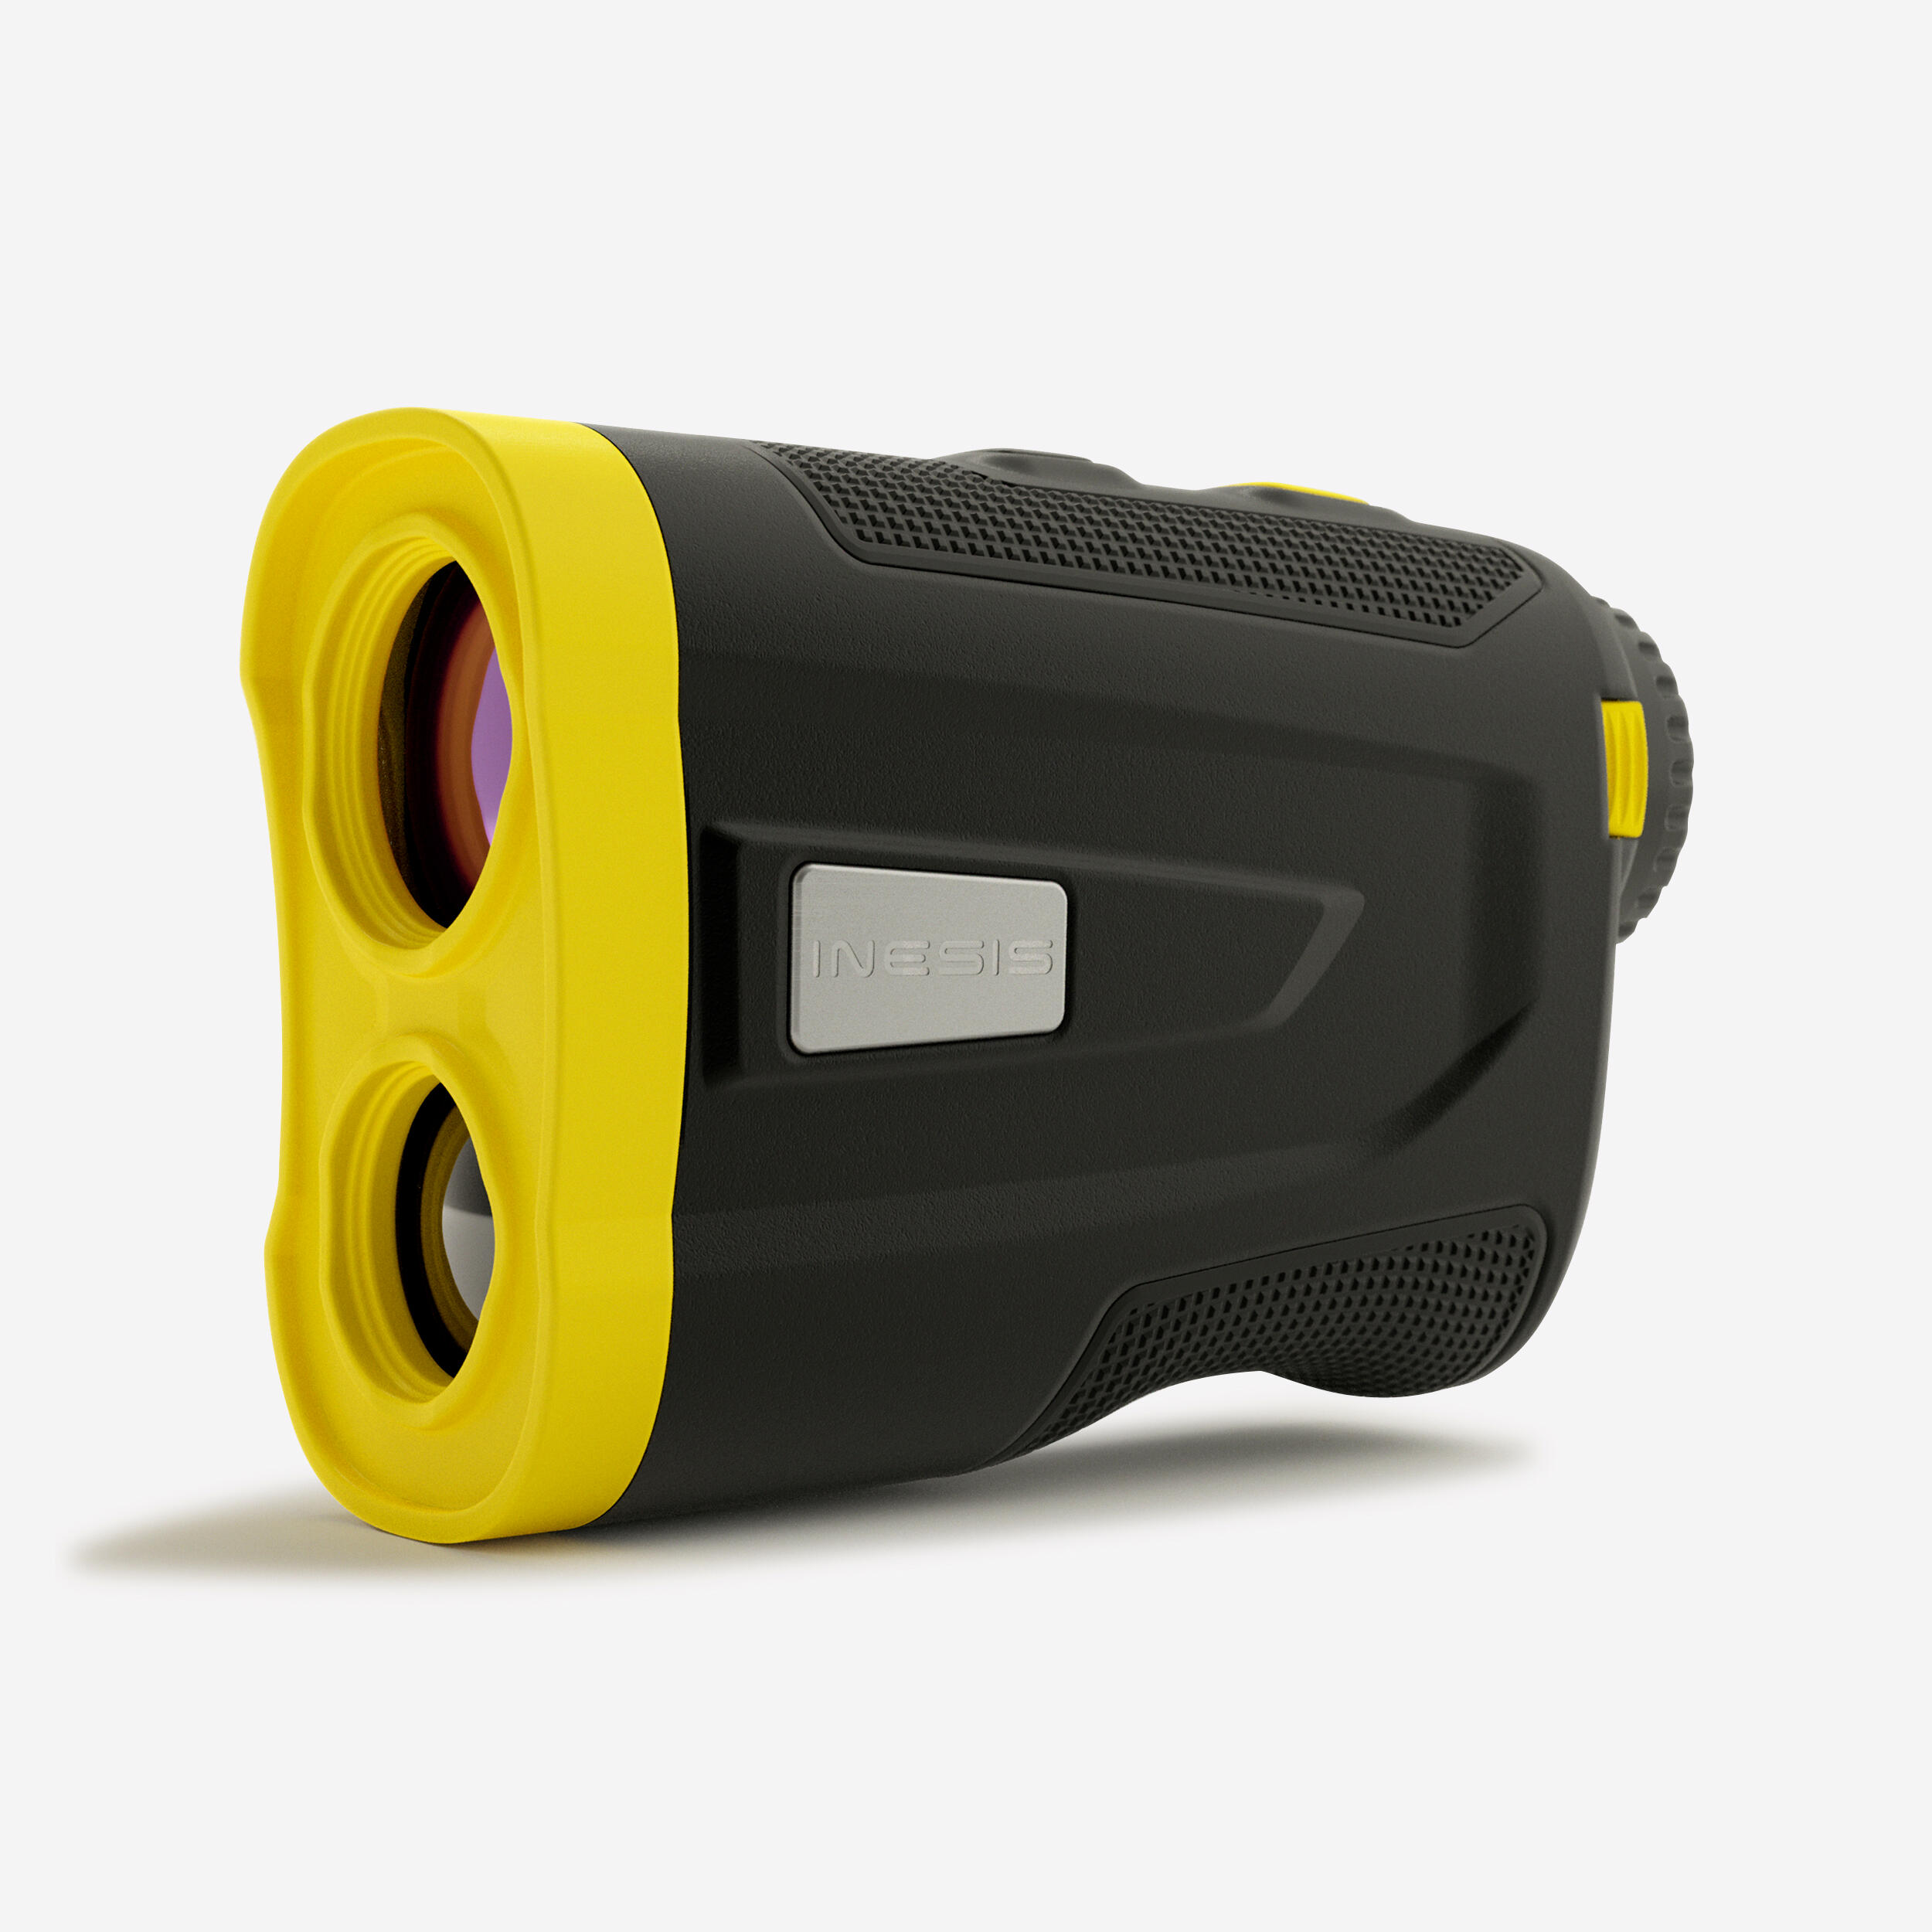 Golf Laser Rangefinder - Inesis 900 Black/Yellow - INESIS